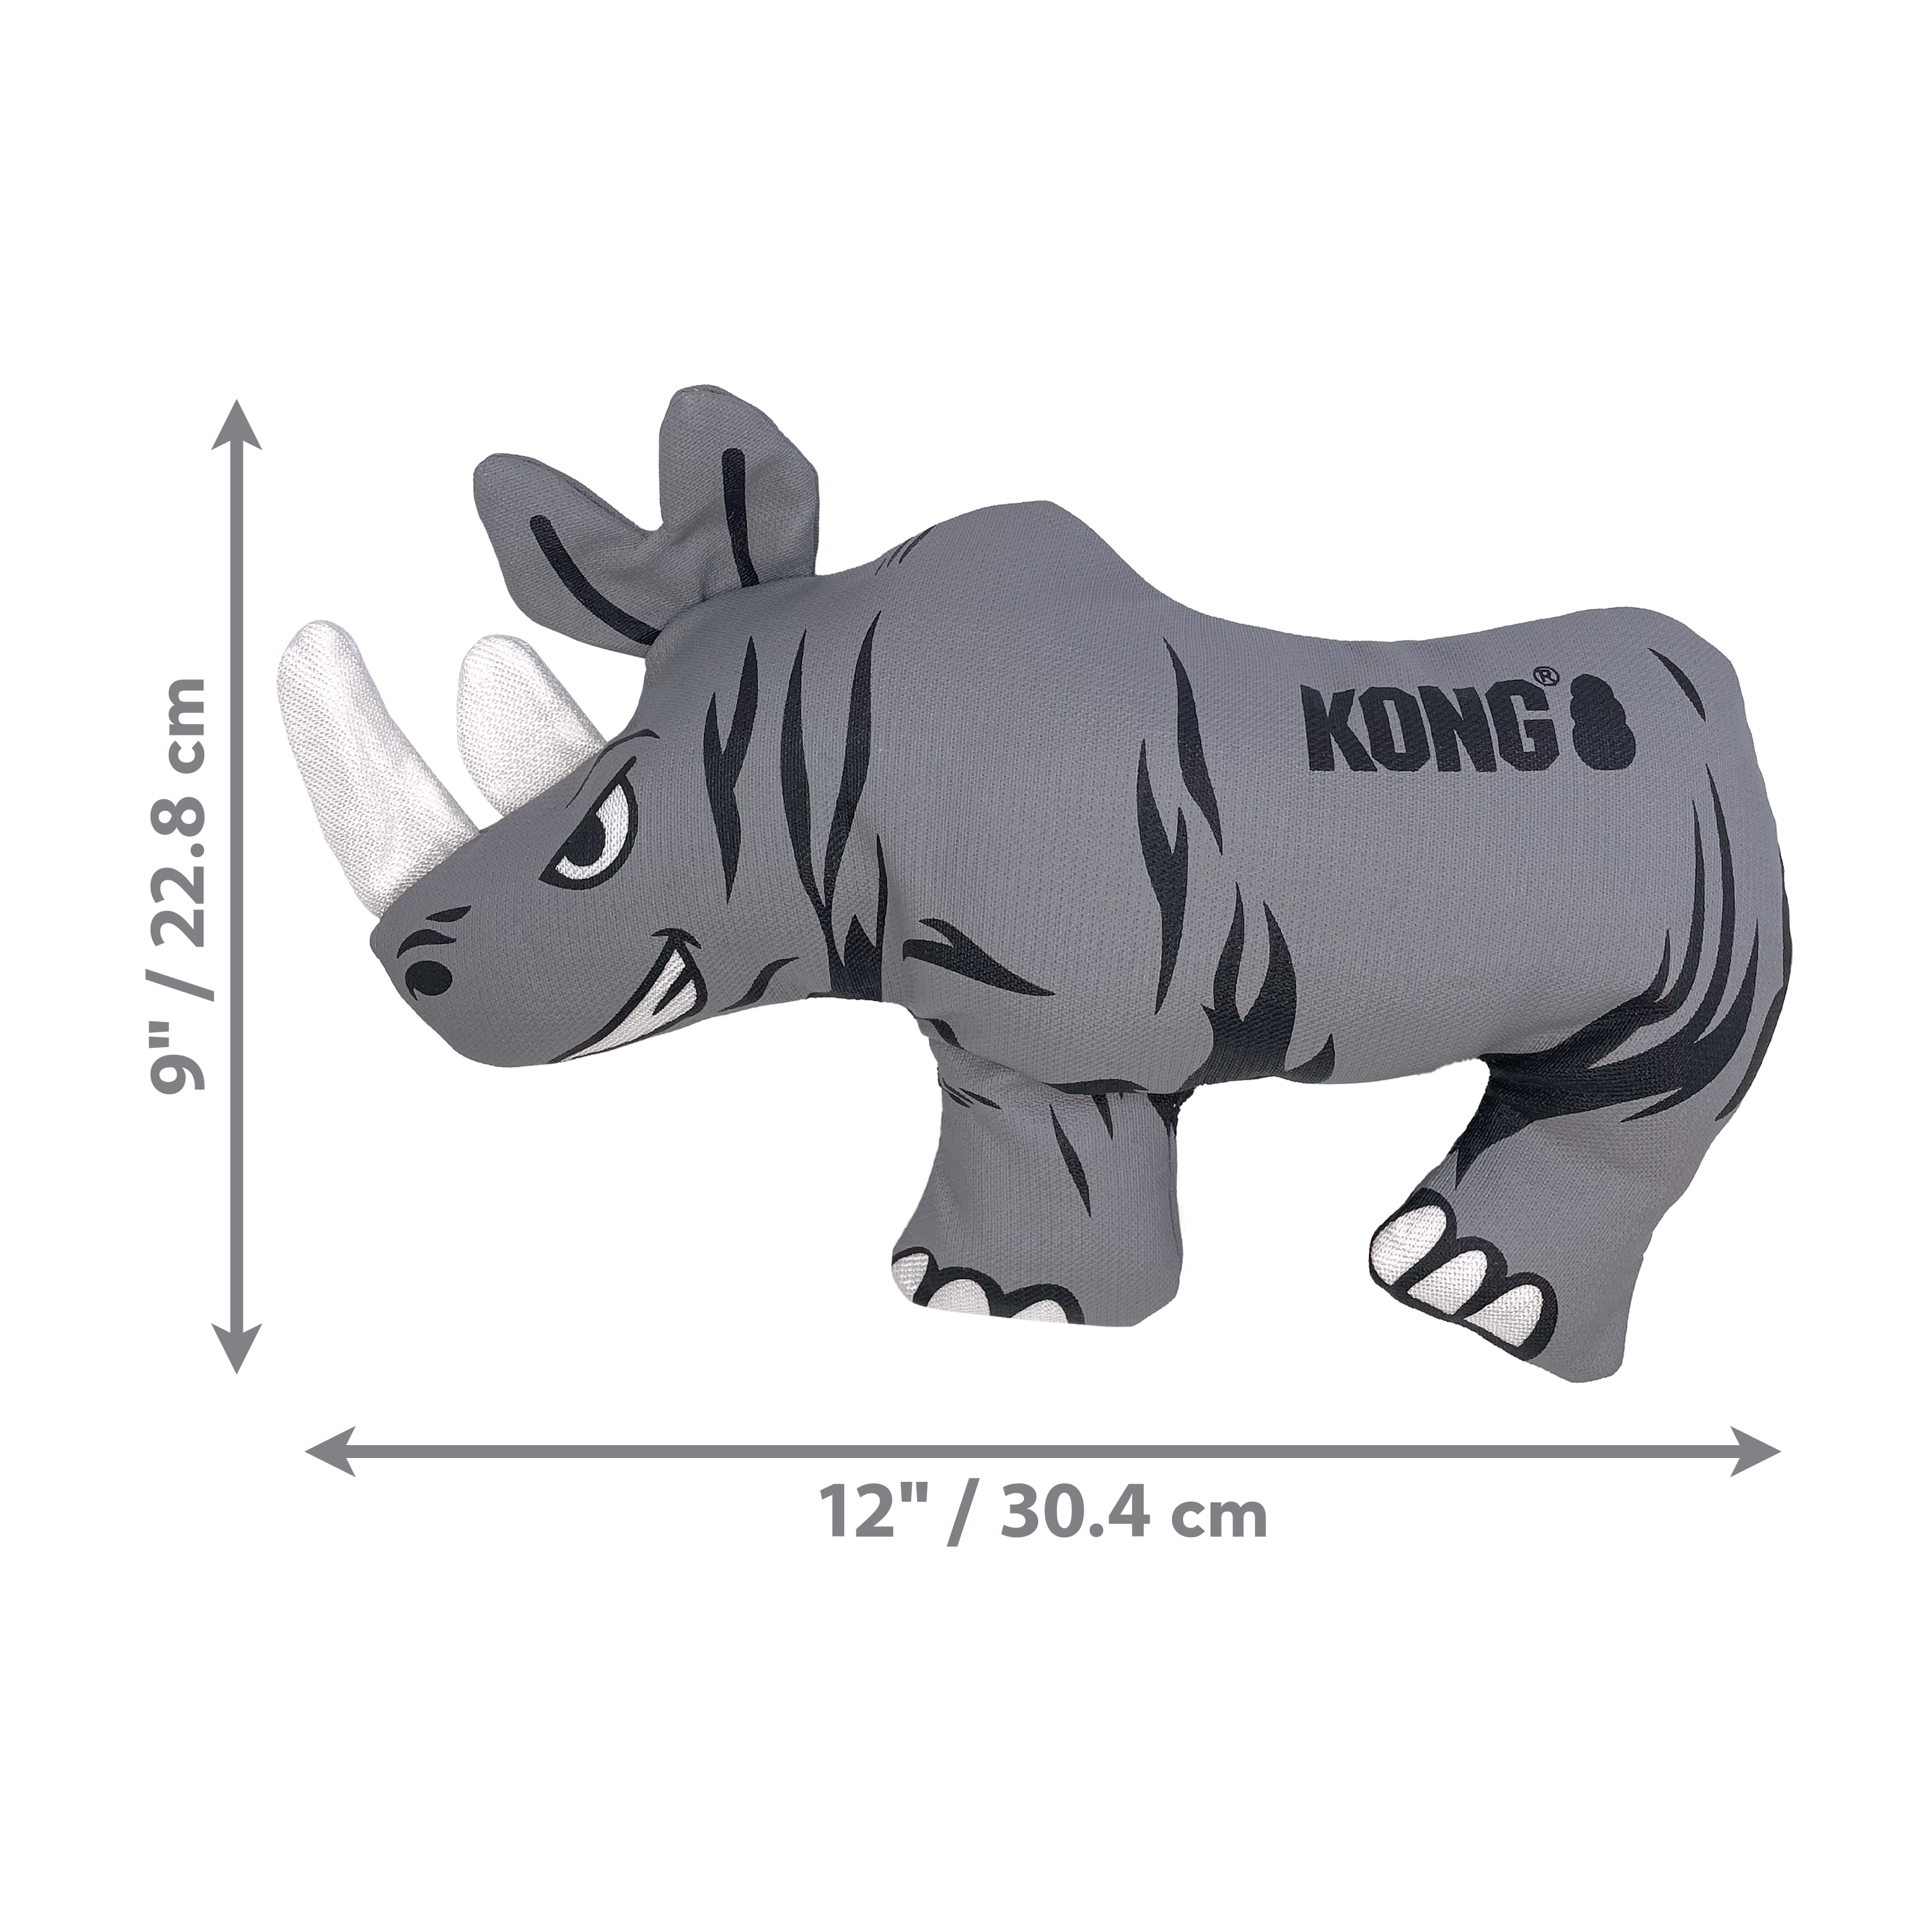 Imagen del producto Maxx Rhino dimoffpack